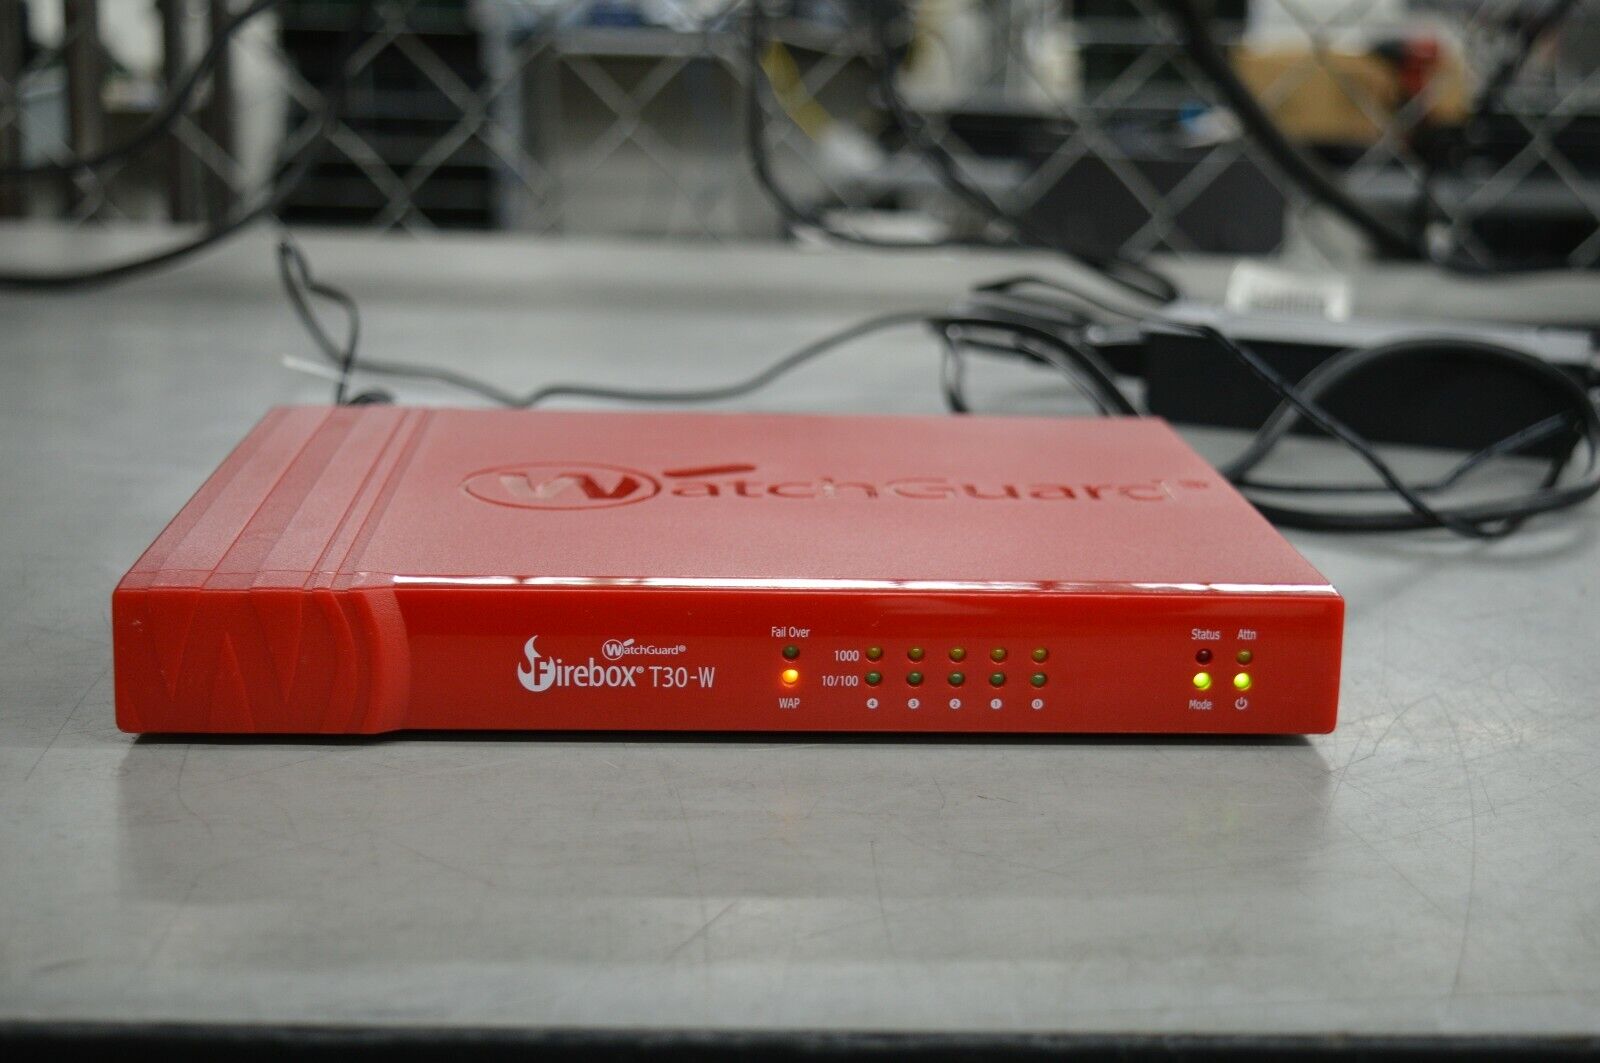 WatchGuard Firebox T30-W BS3AE5W Network Security Firewall w/ AC Power Supply